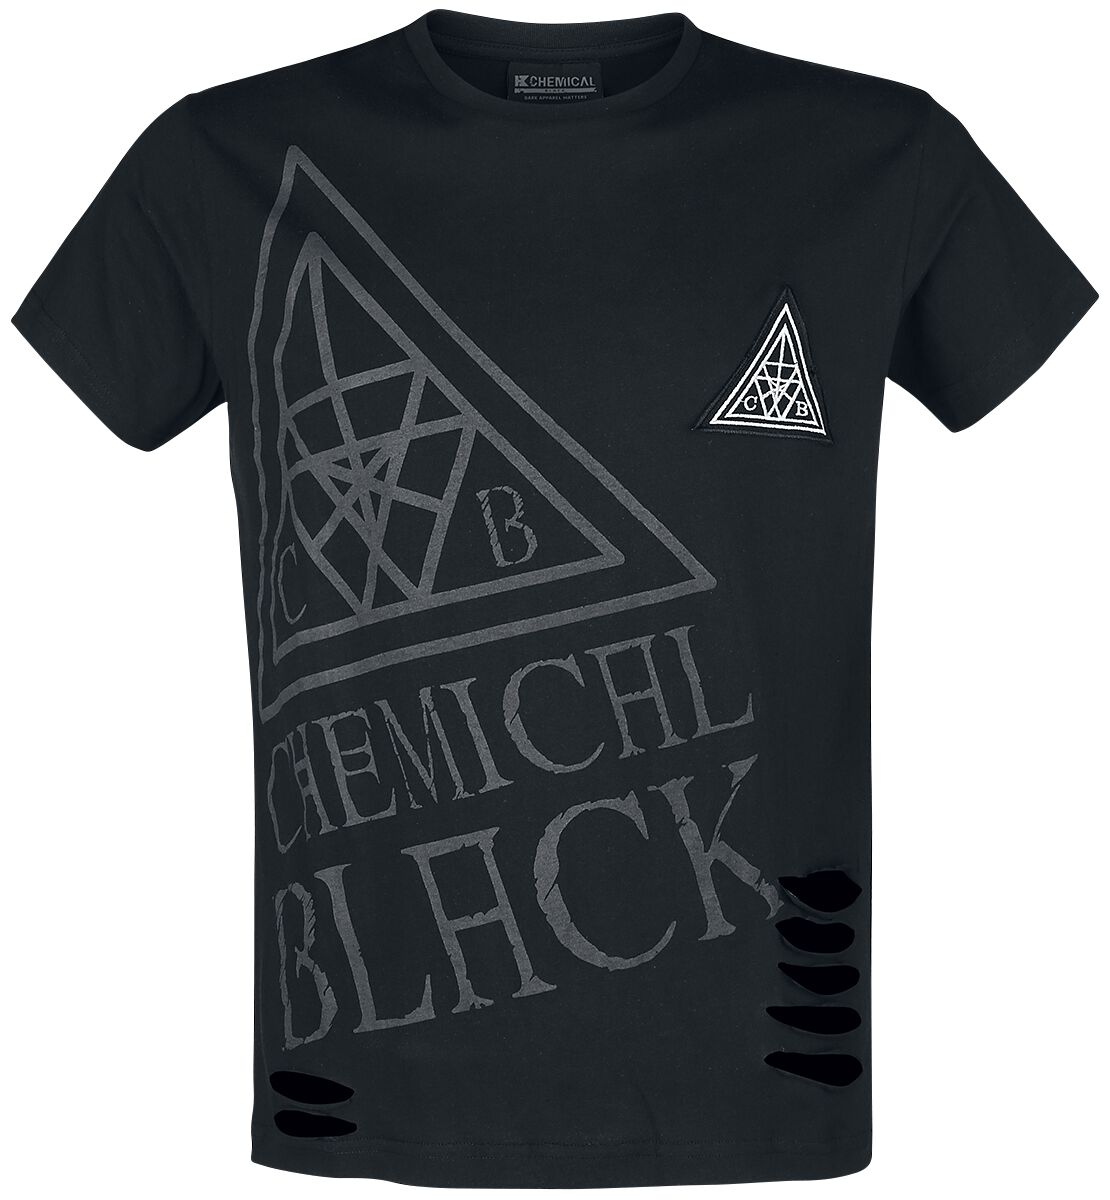 Chemical Black Oliver Top T-Shirt black